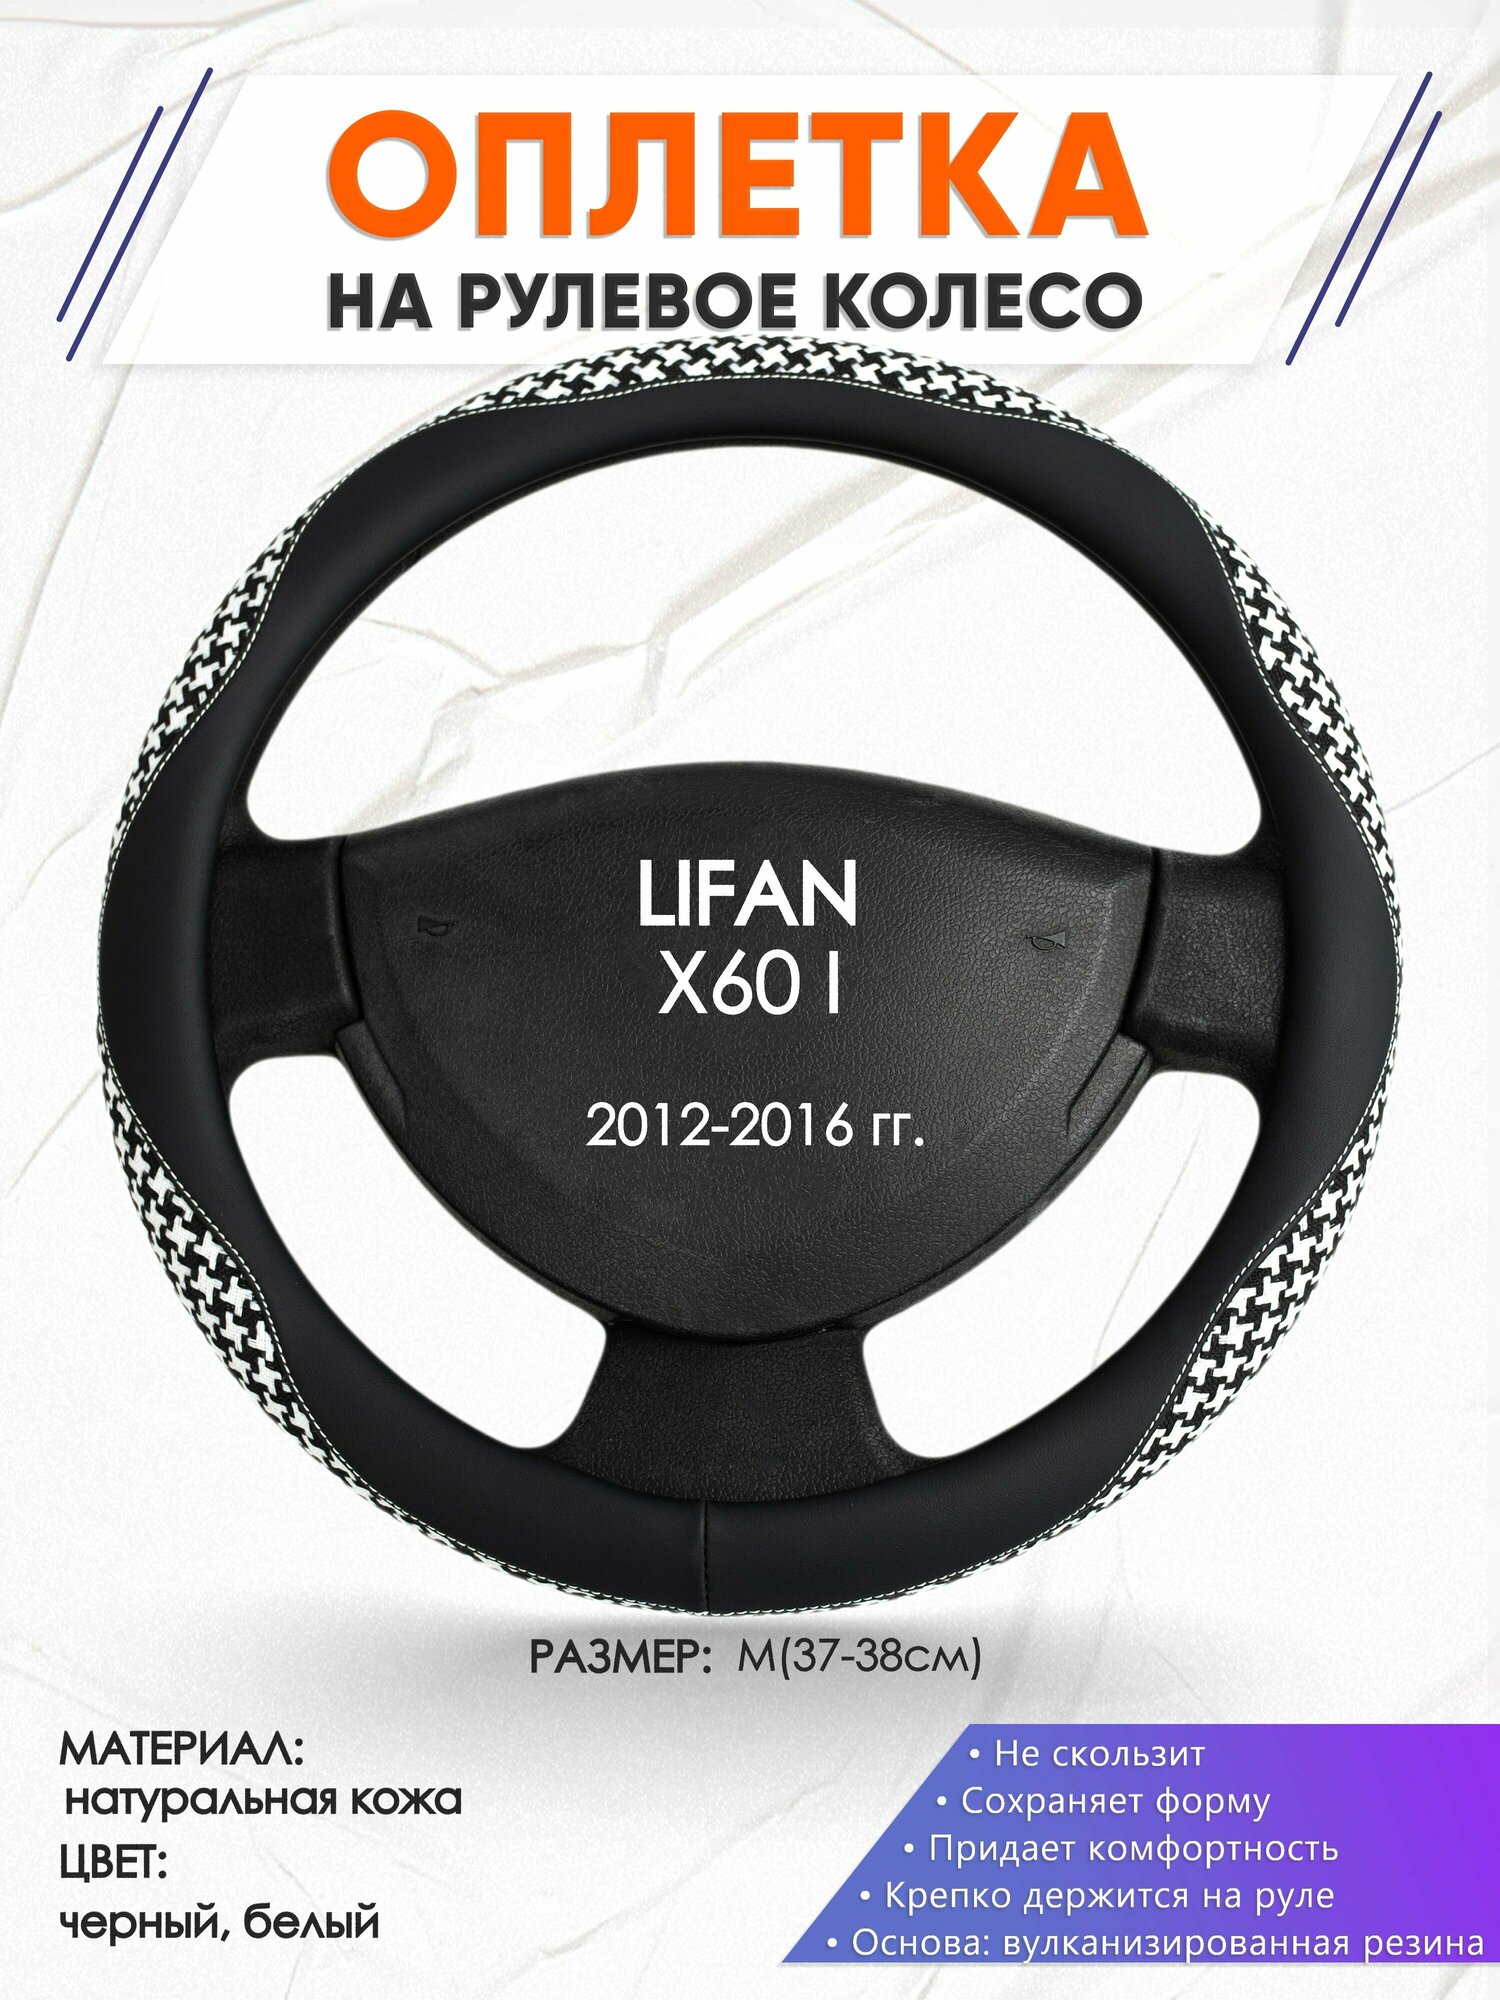 Оплетка наруль для LIFAN X60 I(Лифан икс 60) 2012-2016 годов выпуска размер M(37-38см) Натуральная кожа 30